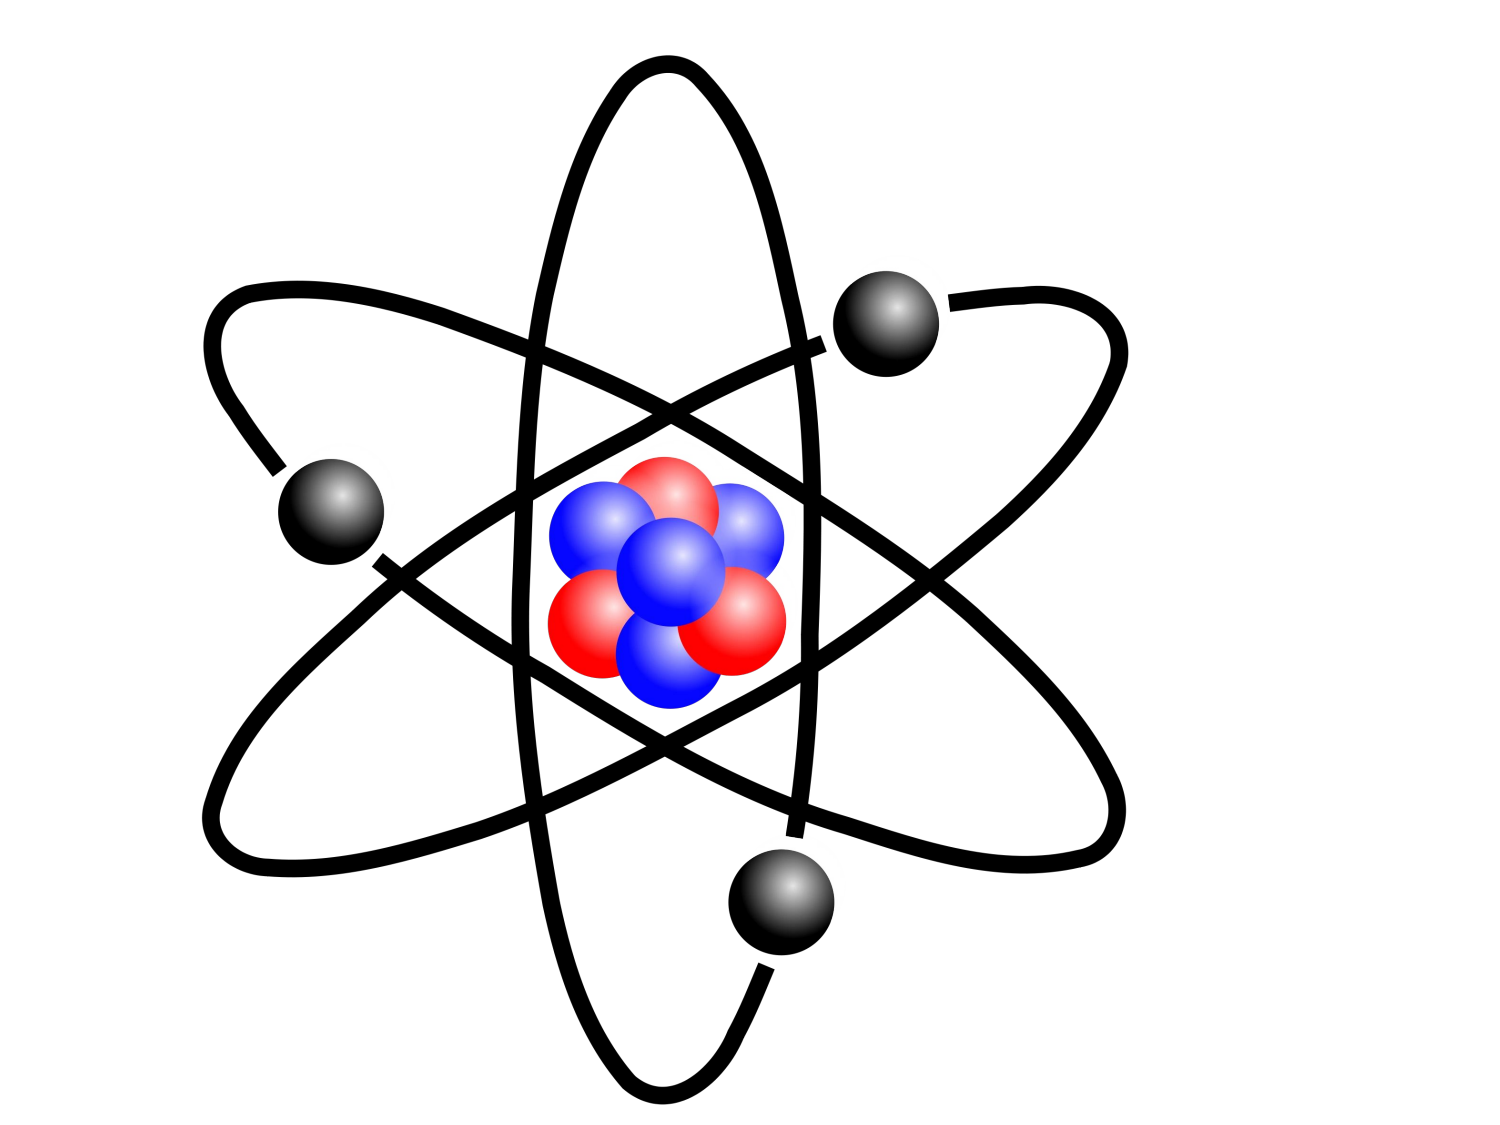 Протоны в атоме золота